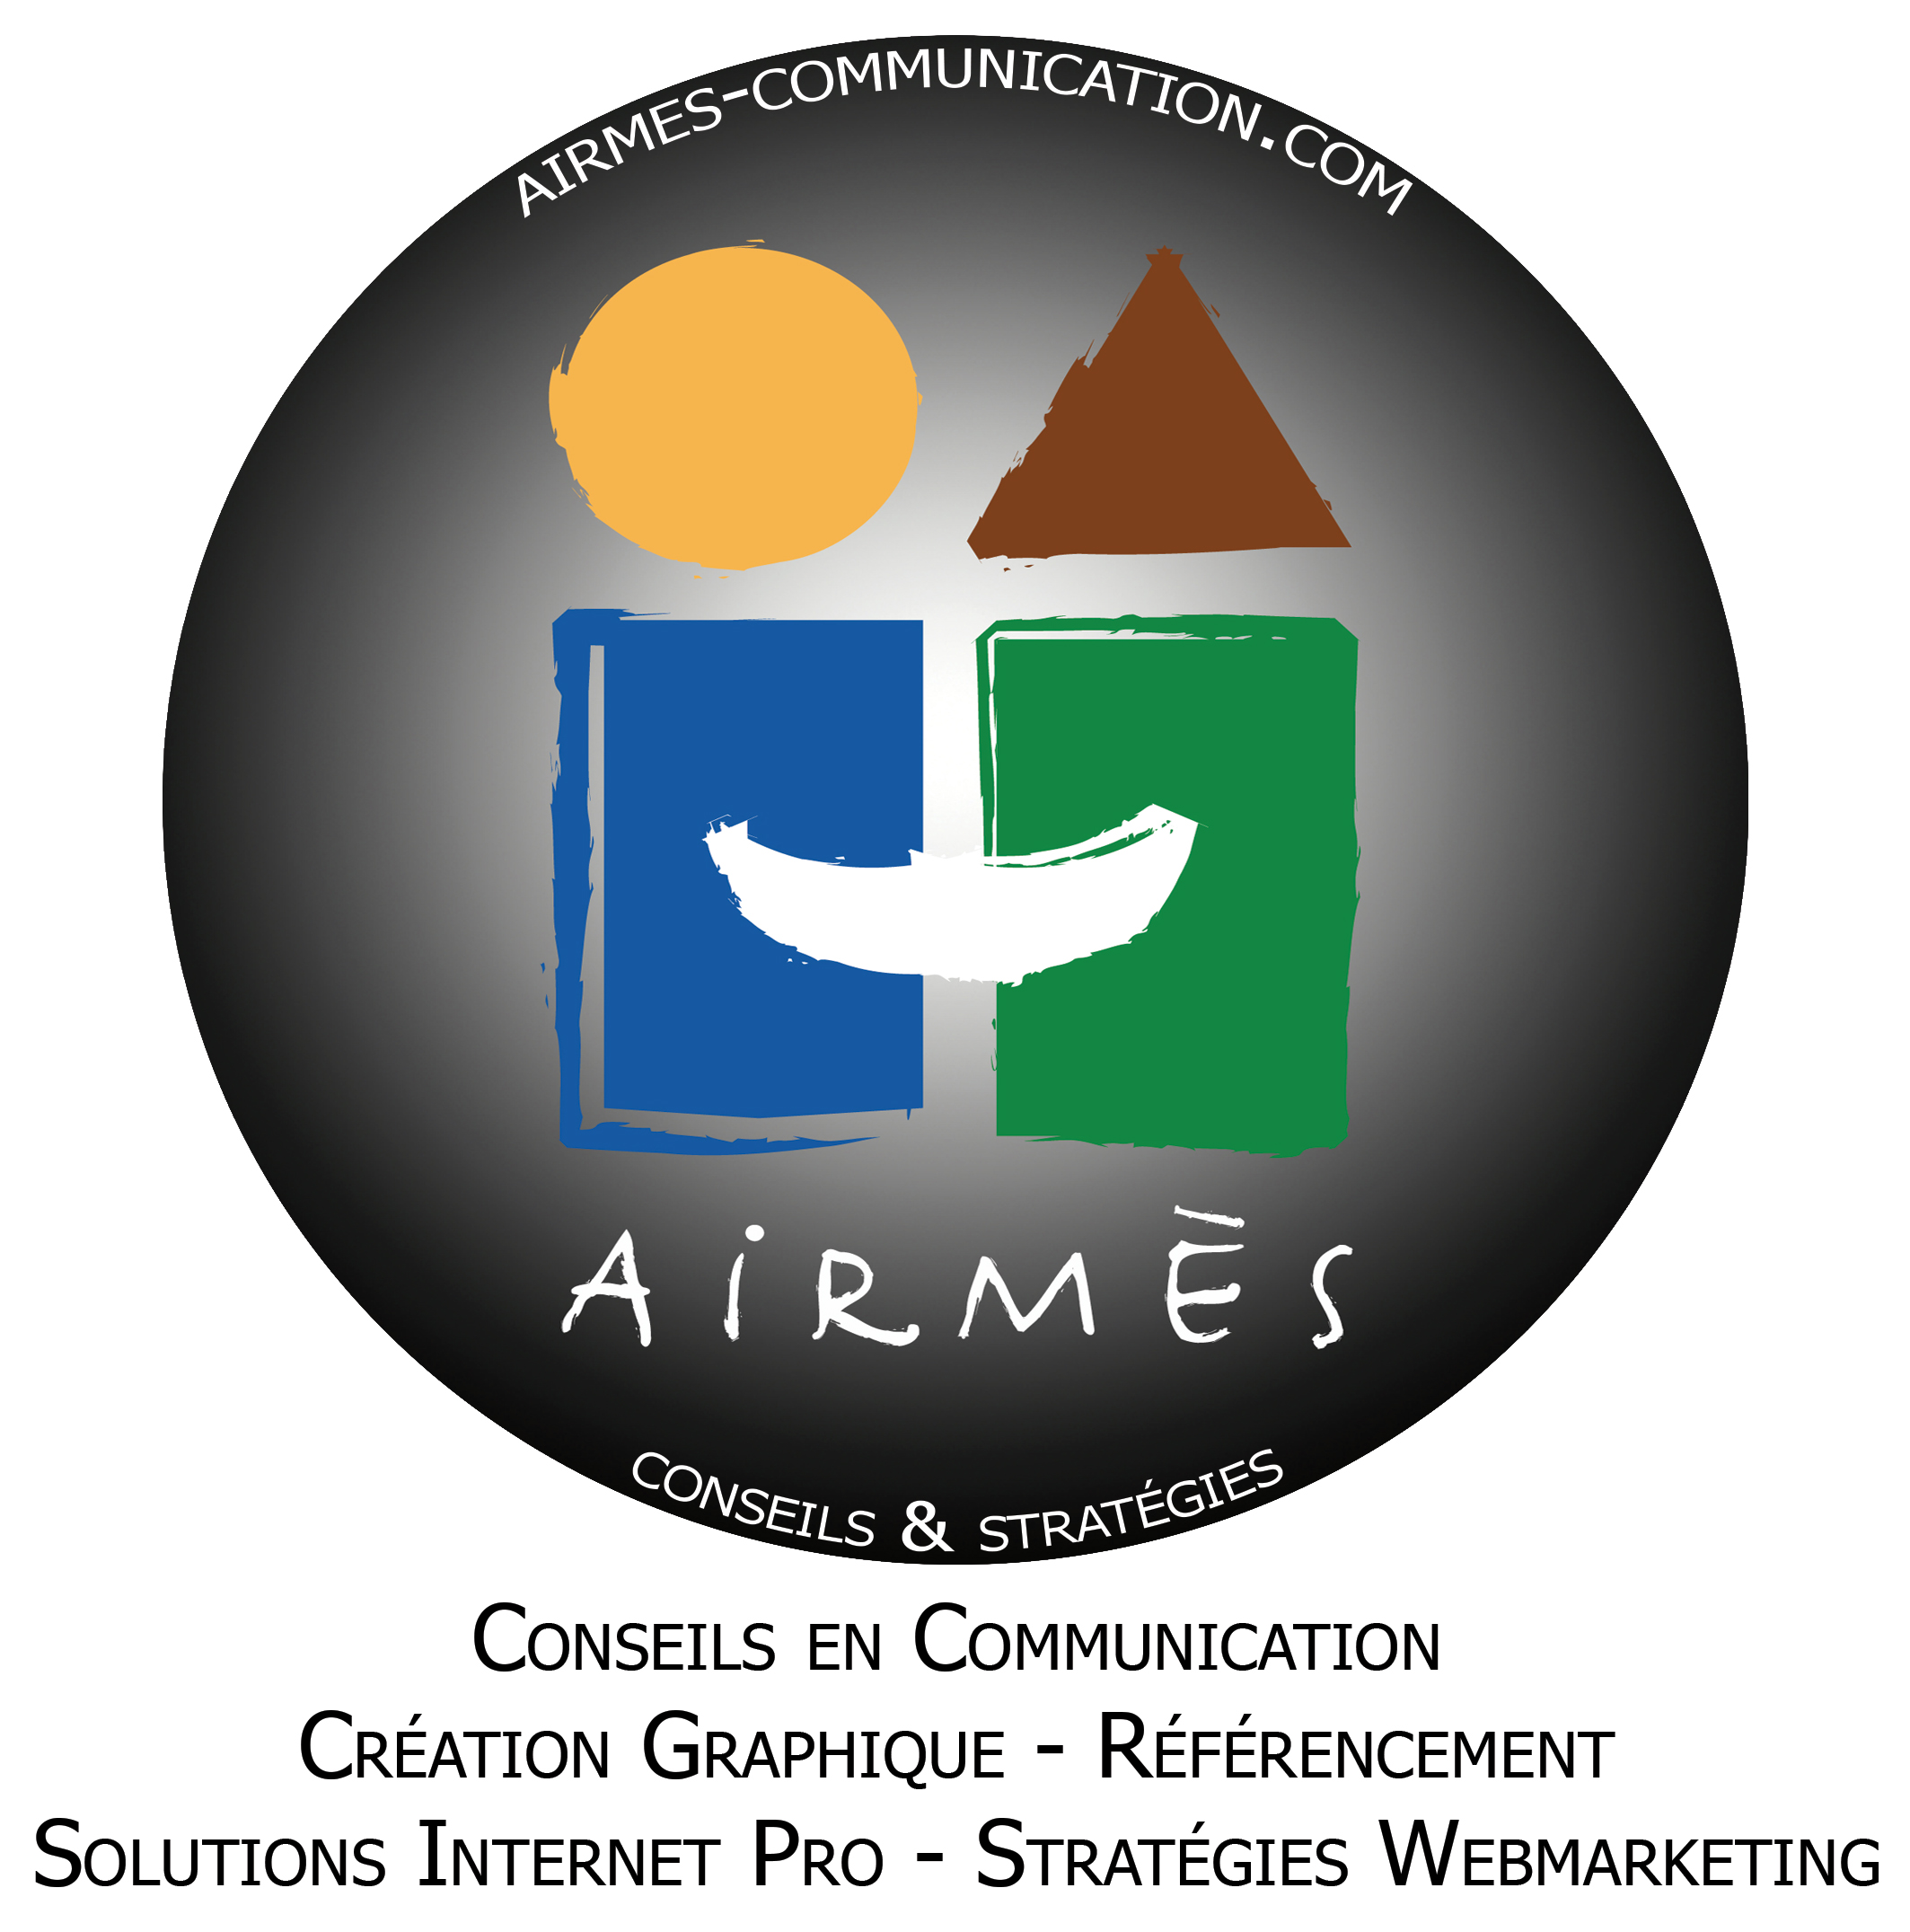 AIRMÈS COMMUNICATION & WEB STRATÉGIE